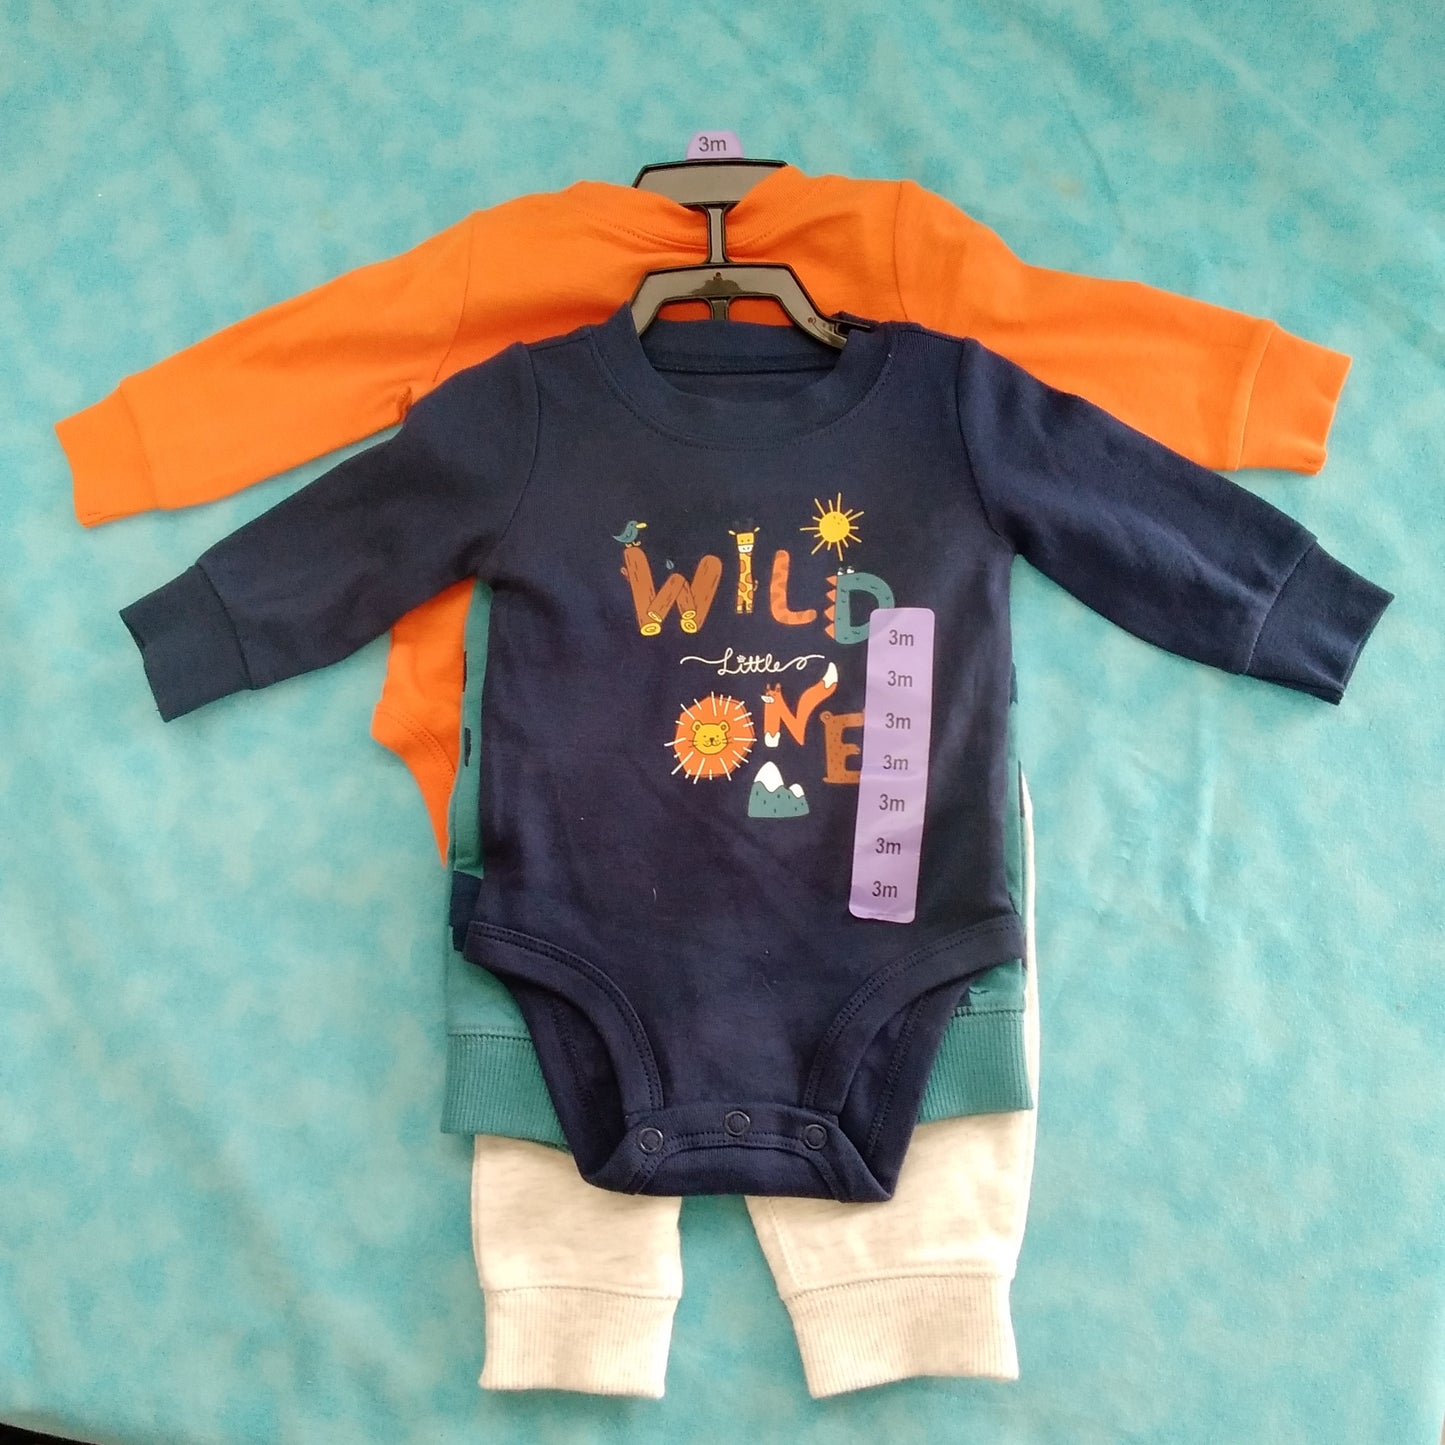 NWT - Carter's Infant 4 Piece Boy's Pants & Body Suit Jungle Set - Size: 3 months